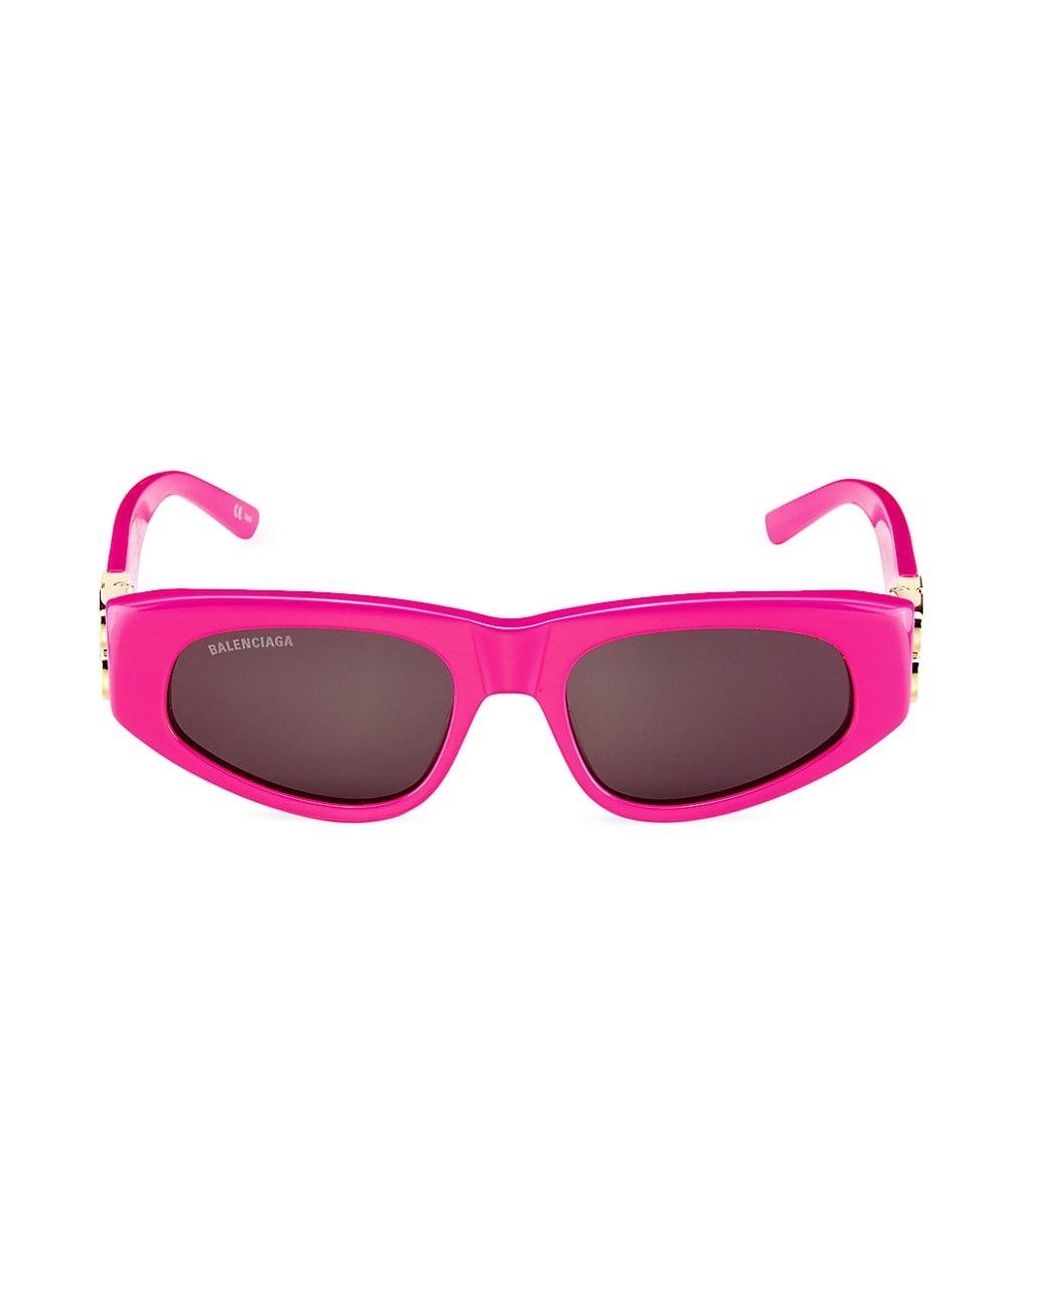 Balenciaga Dynasty 53mm Cat Eye Sunglasses in Pink | Lyst